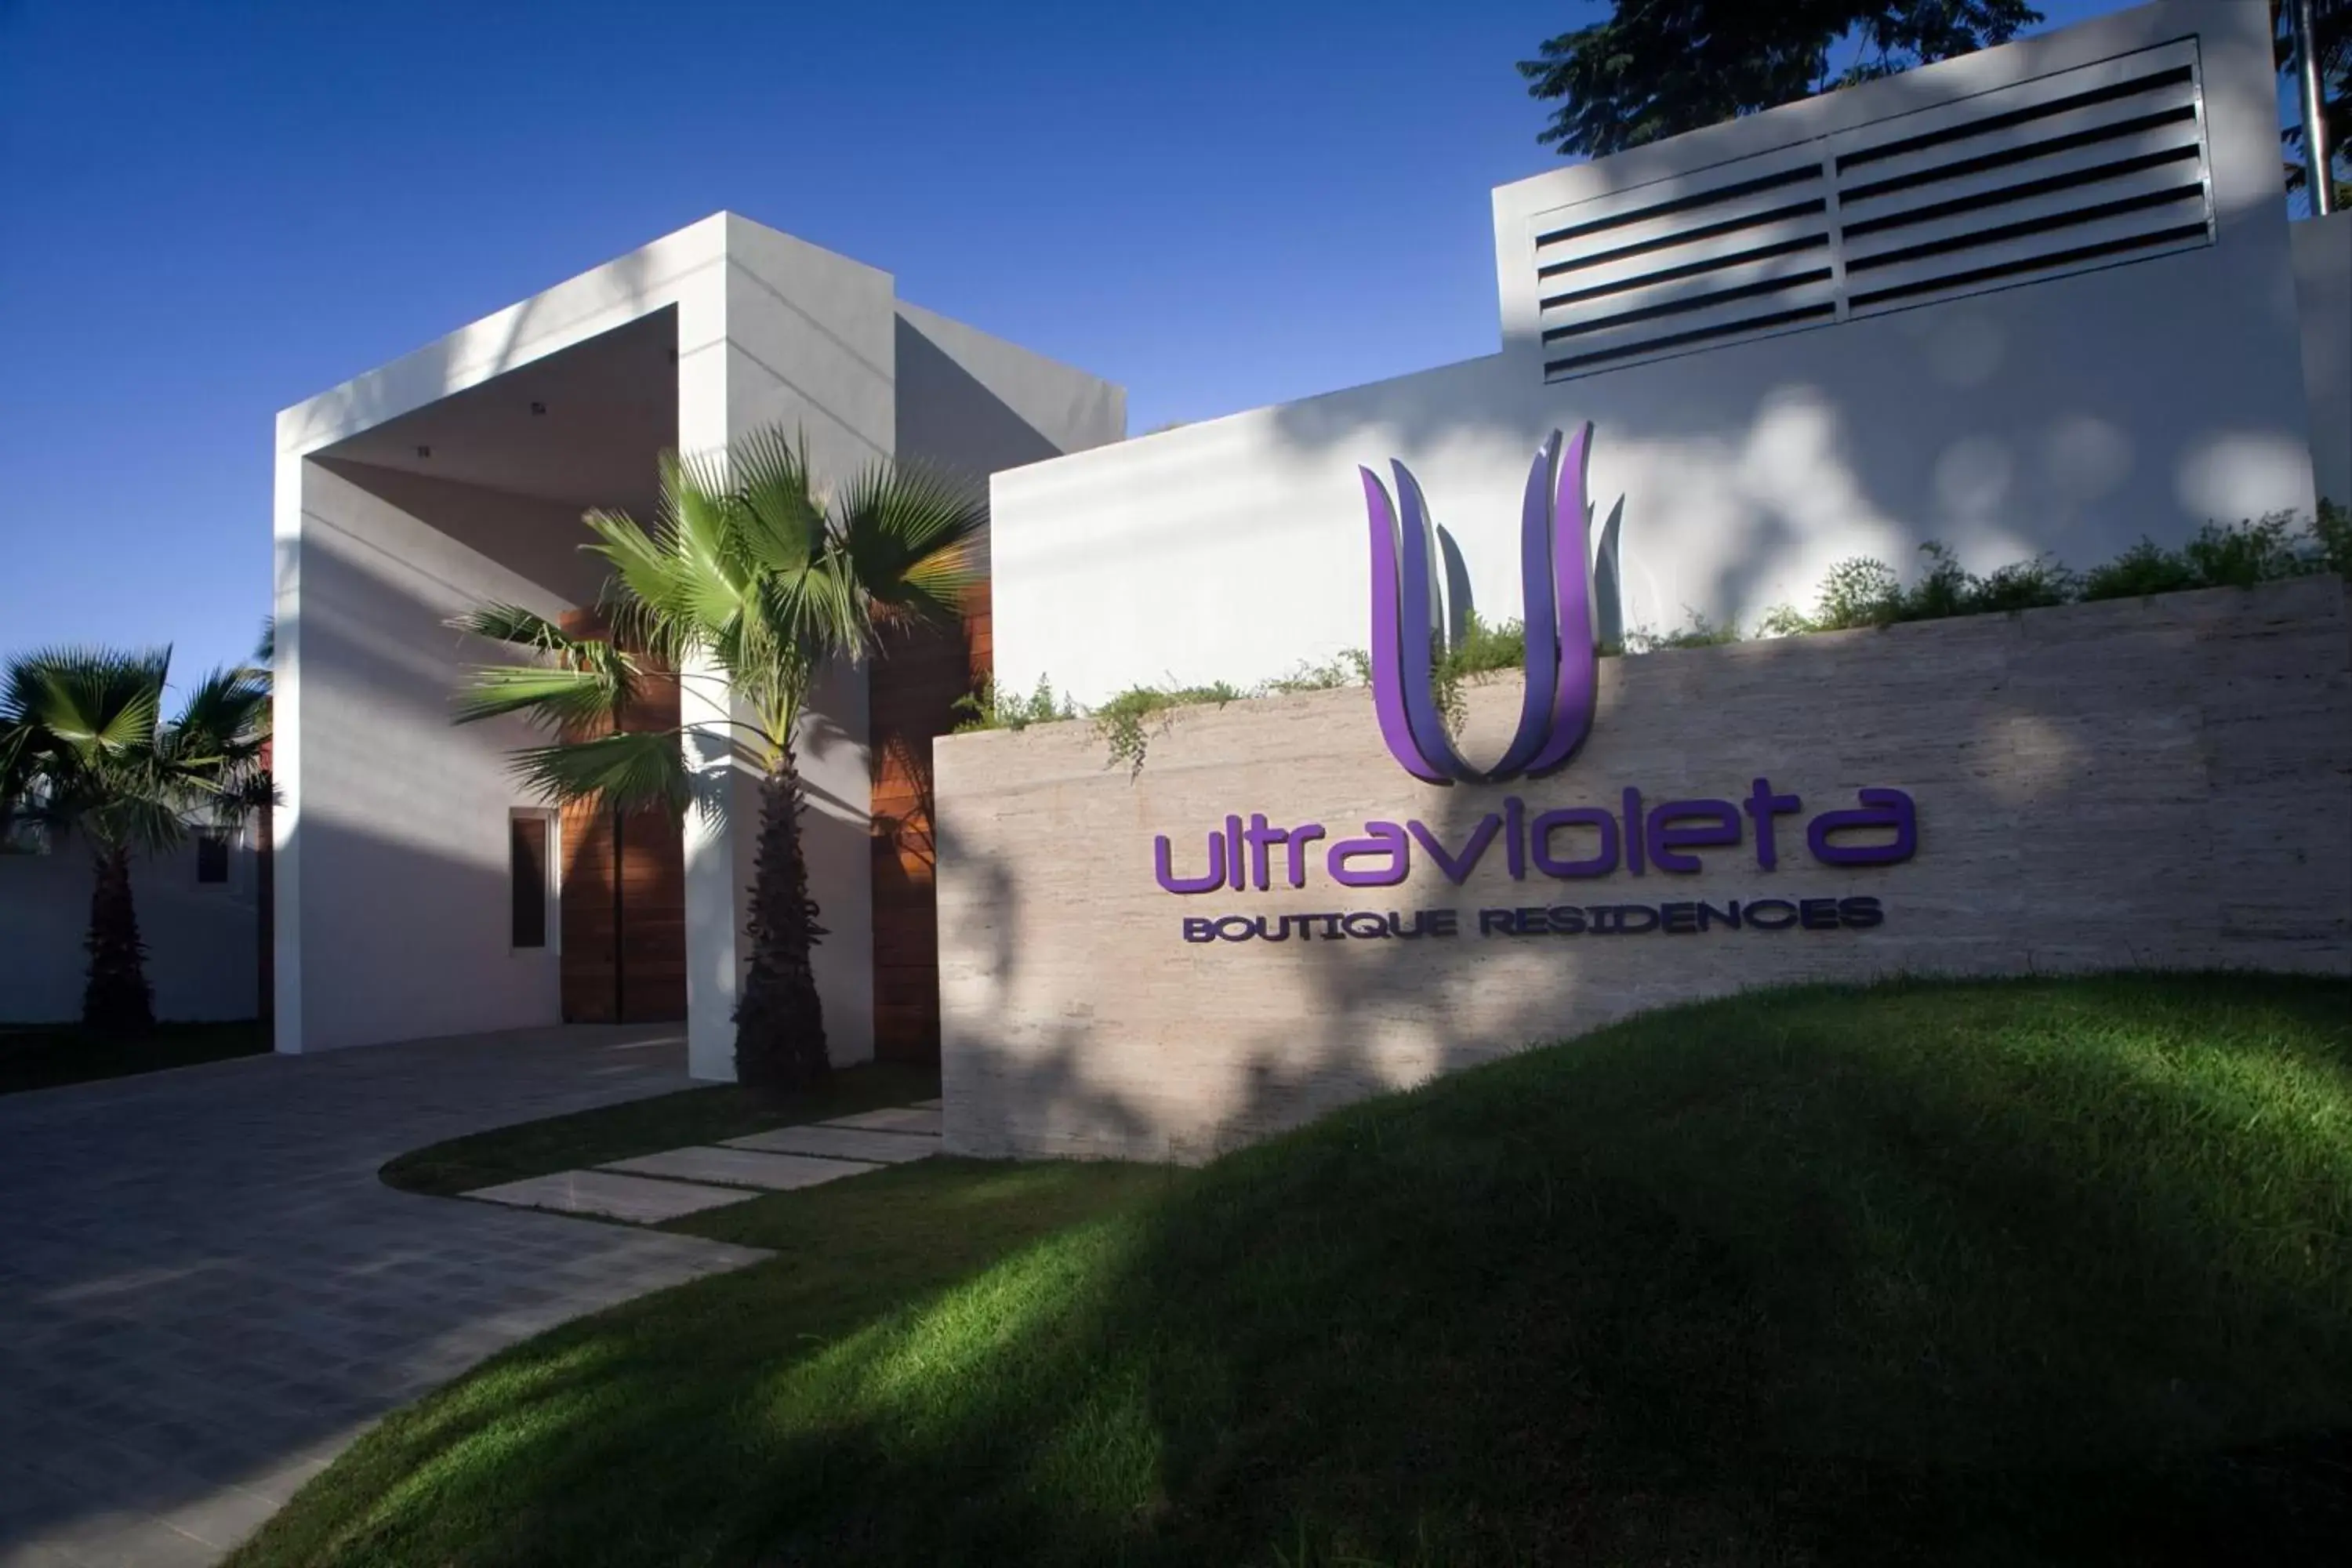 Facade/entrance, Property Logo/Sign in Ultravioleta Boutique Residences